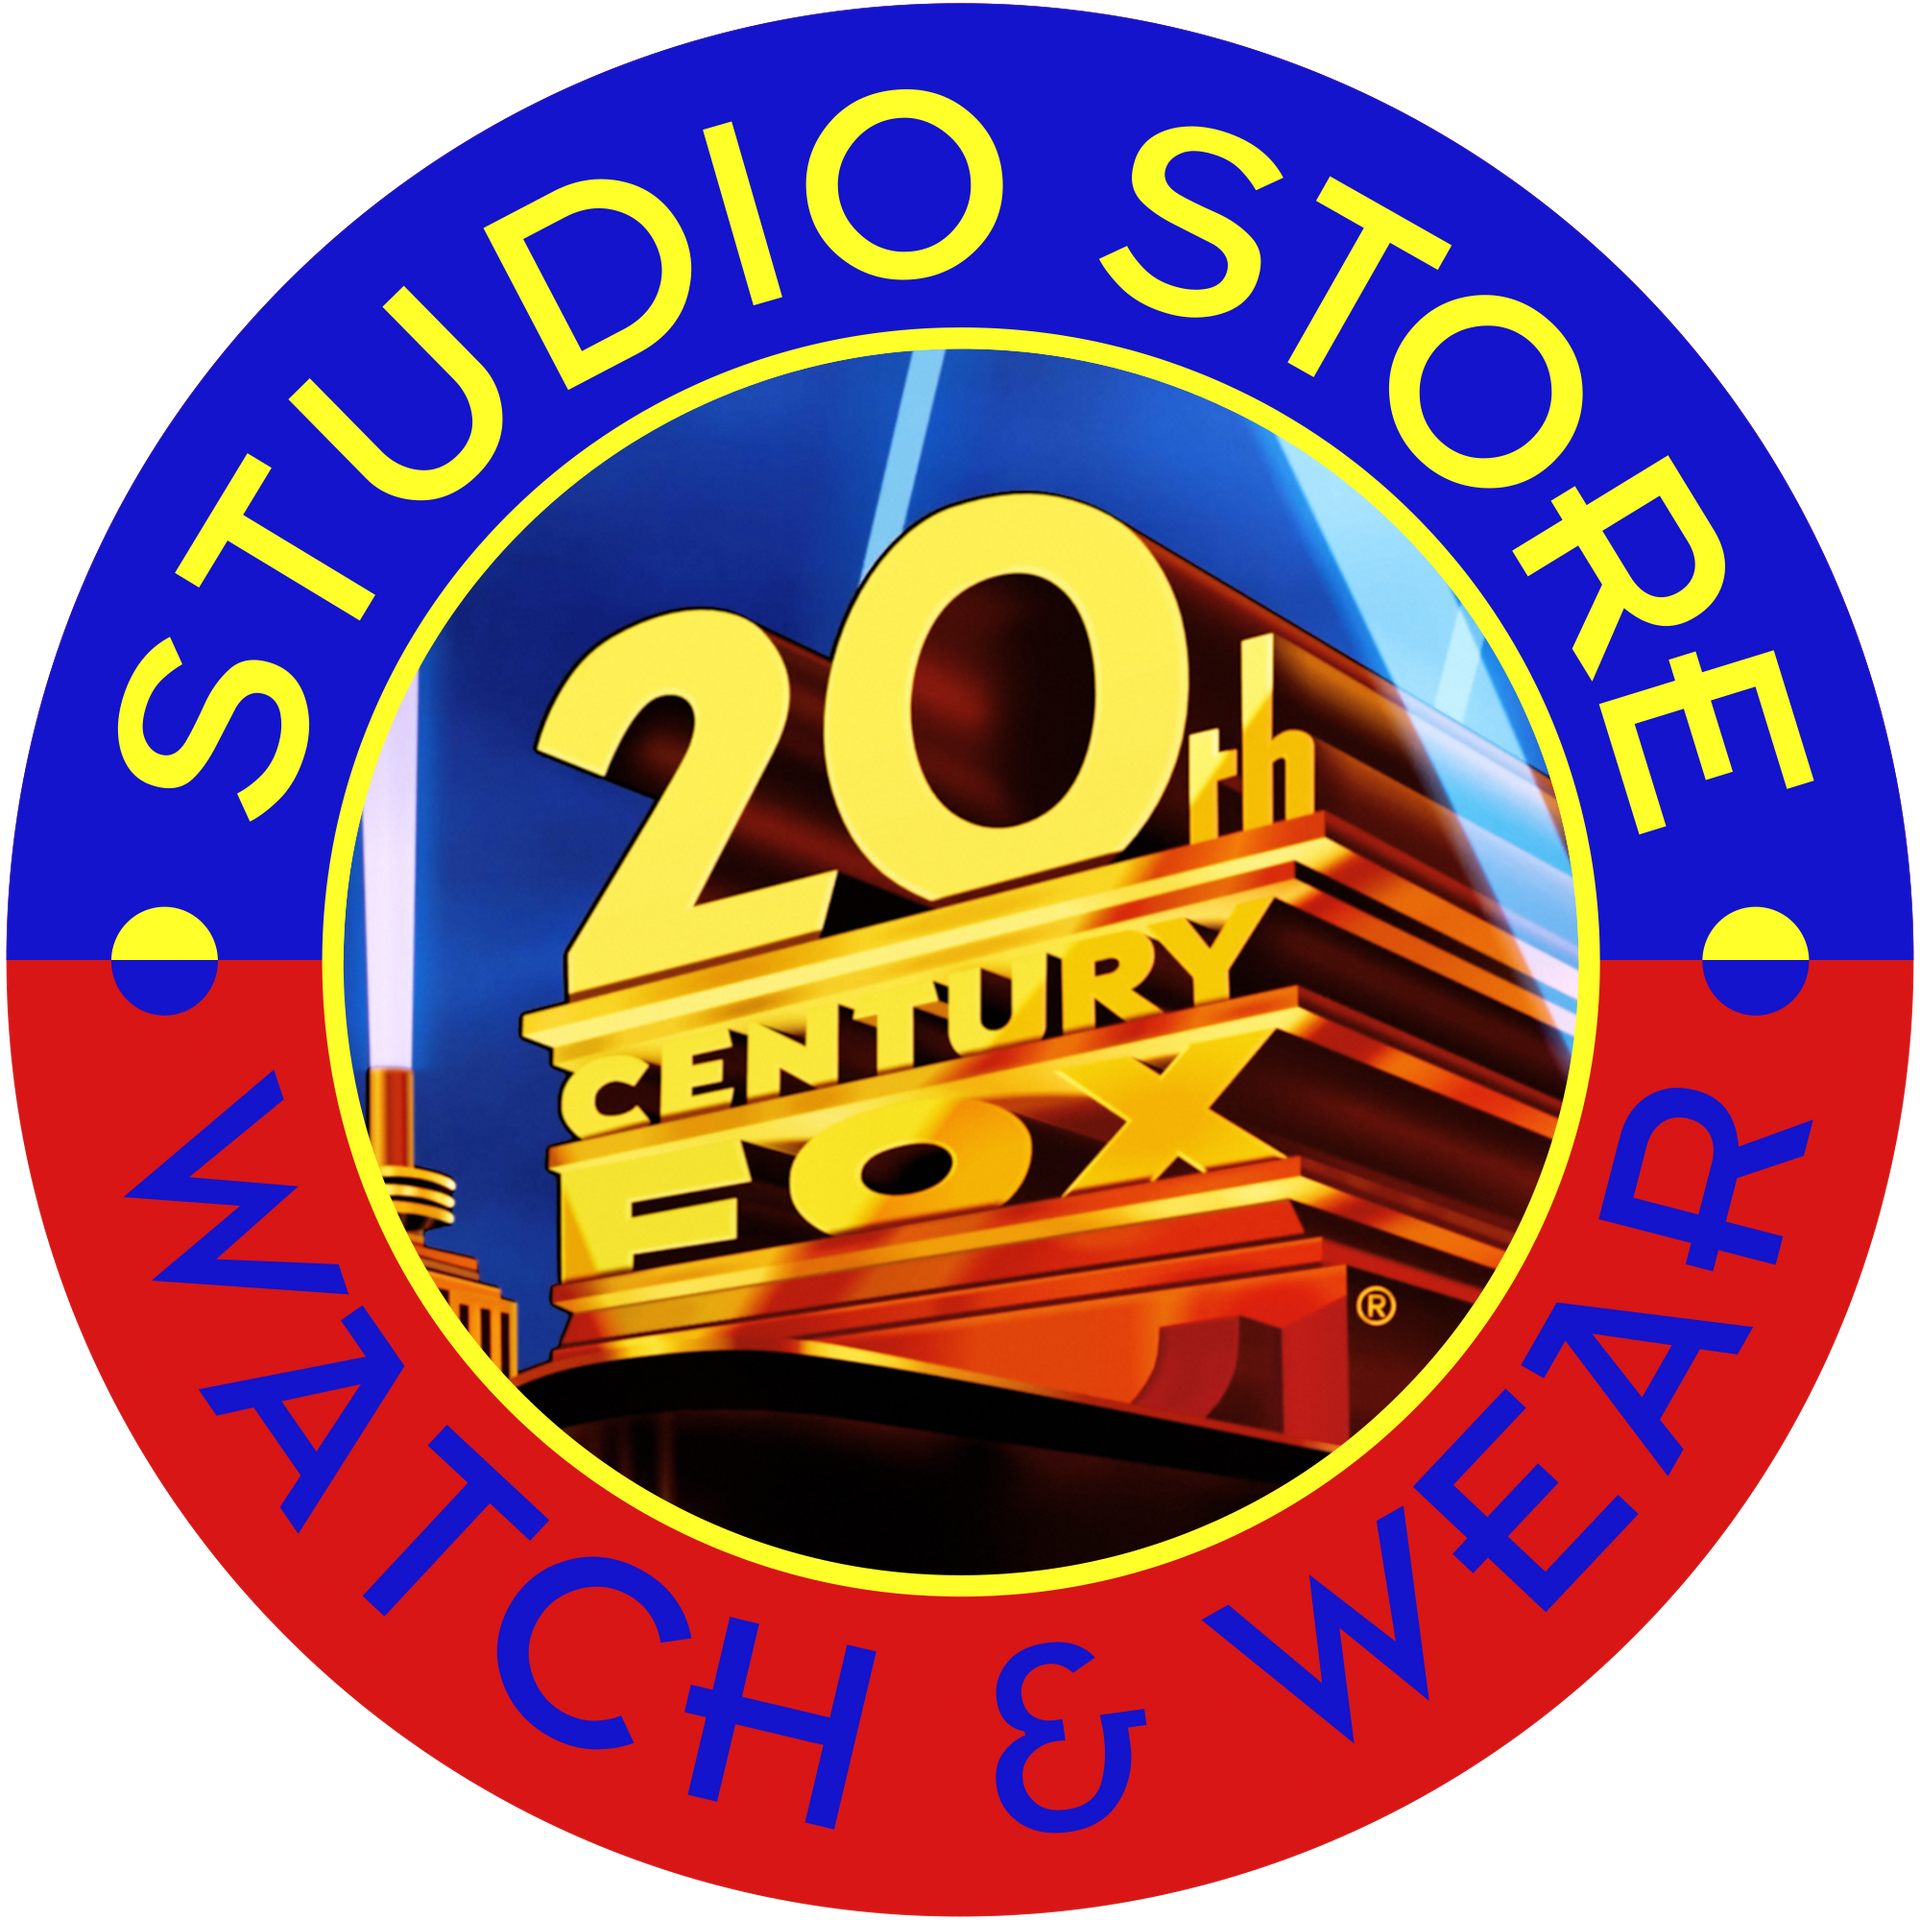 20th Century Fox '93 Prototype Logo Remake v2 by AniGummiJason on DeviantArt